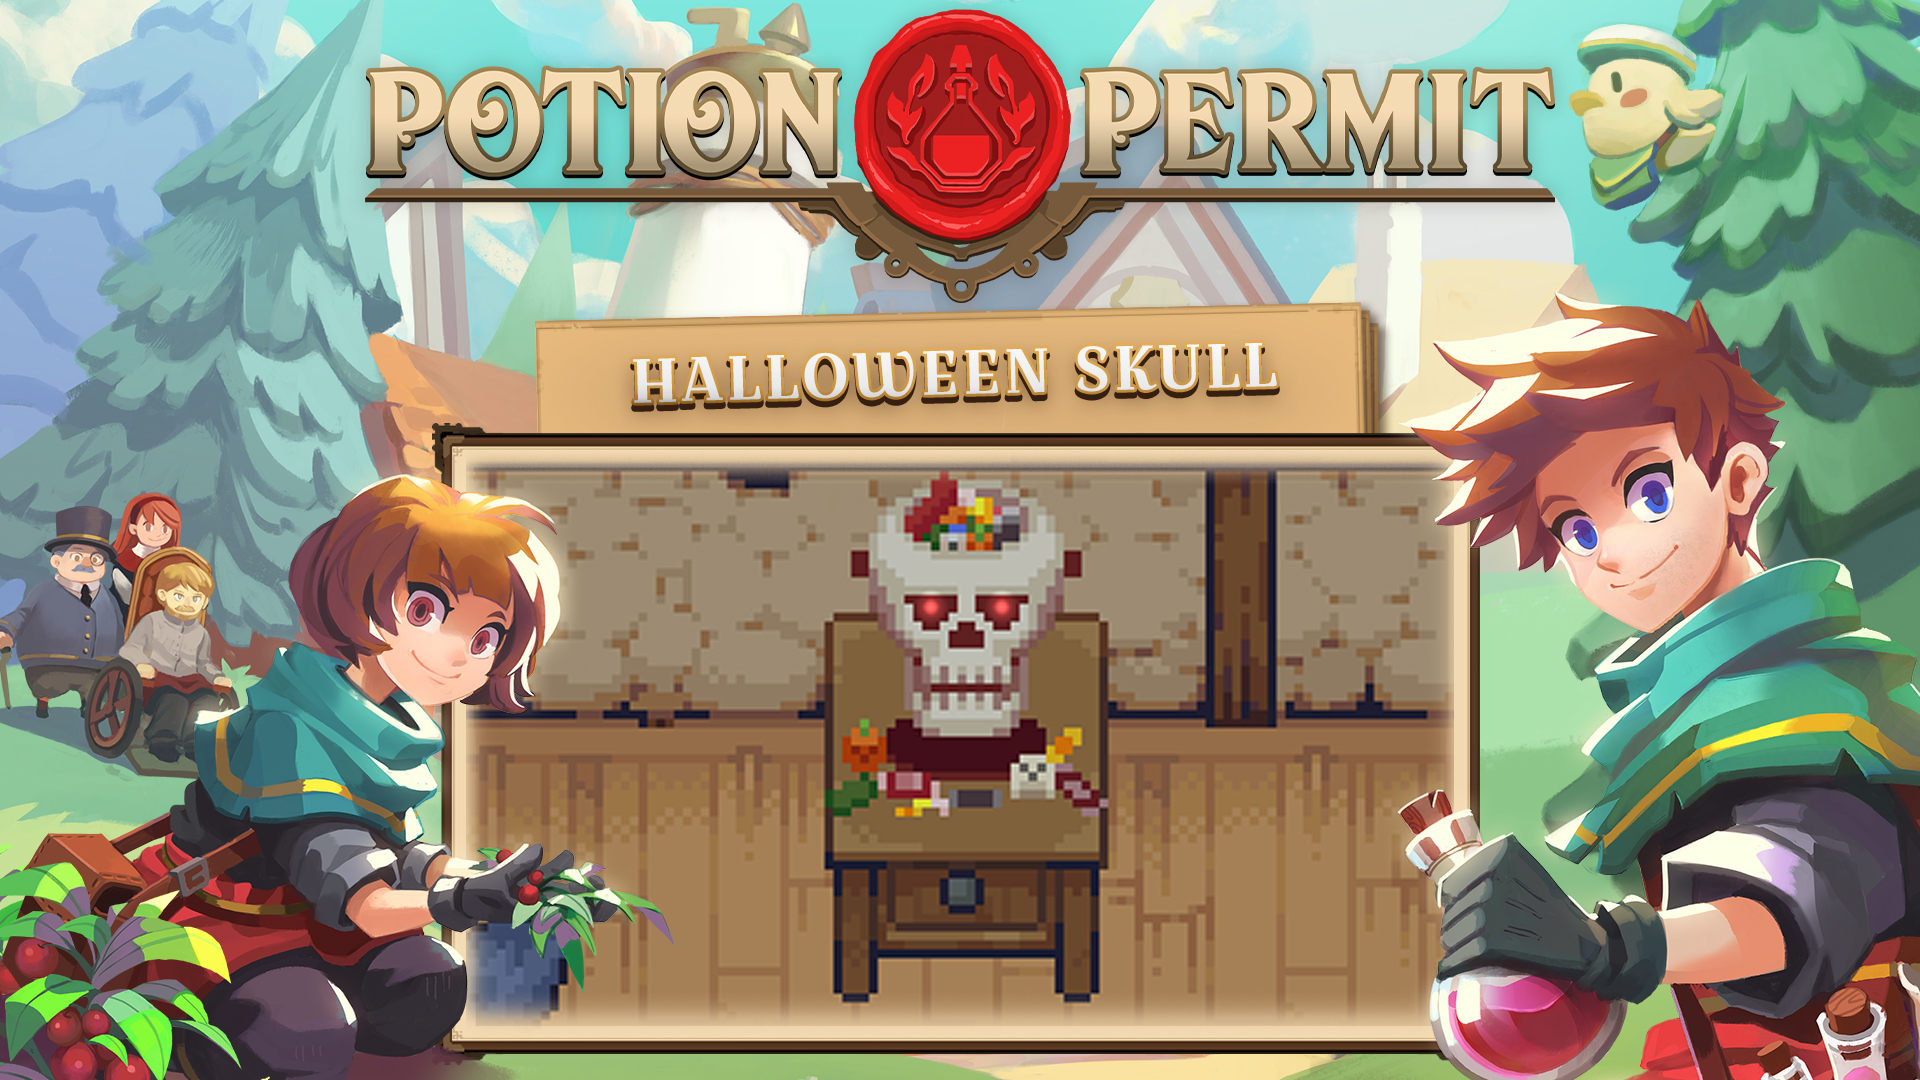 Potion Permit - Halloween Skull